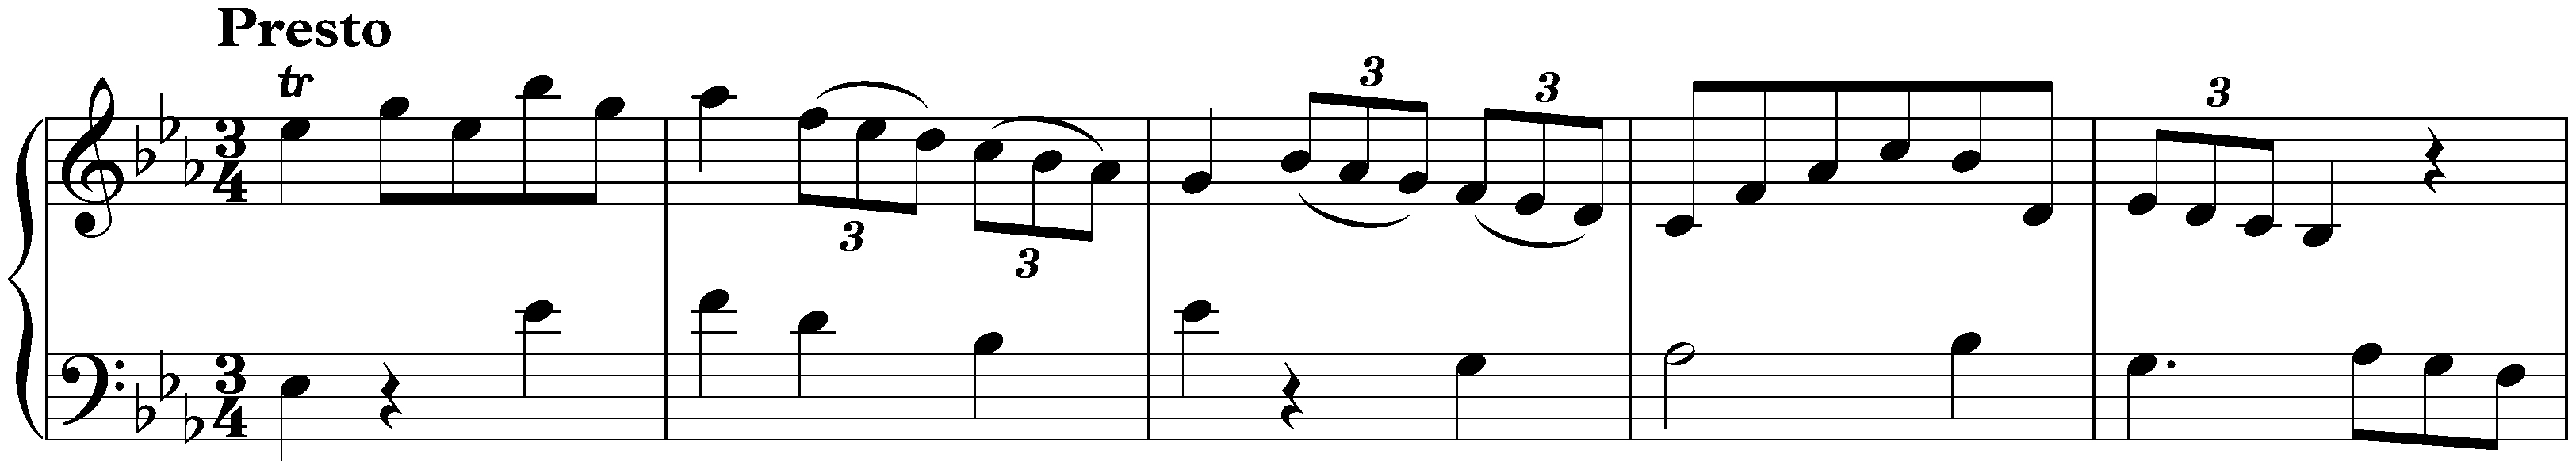 Sonata in E-flat major, Hob. XVI:16; 3. Presto